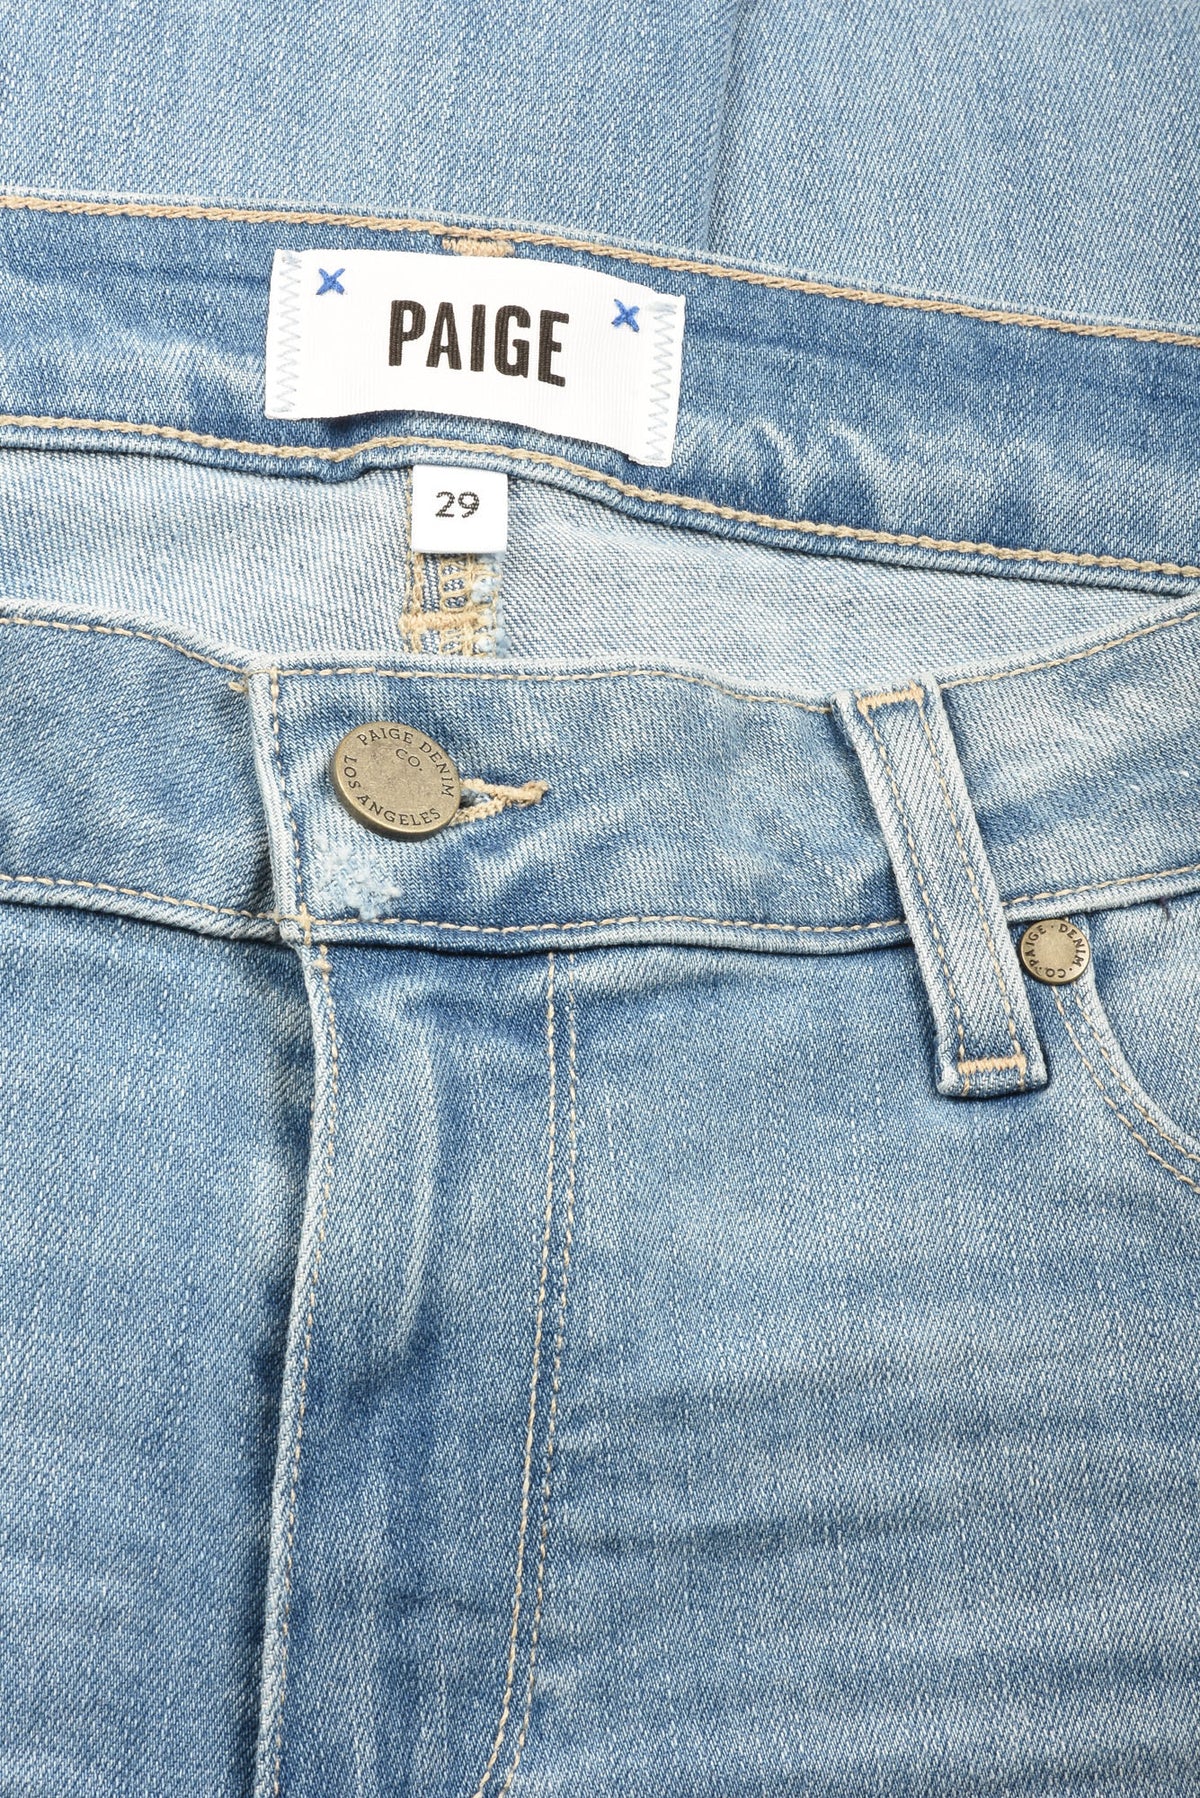 Paige Size 29 Women&#39;s Jeans